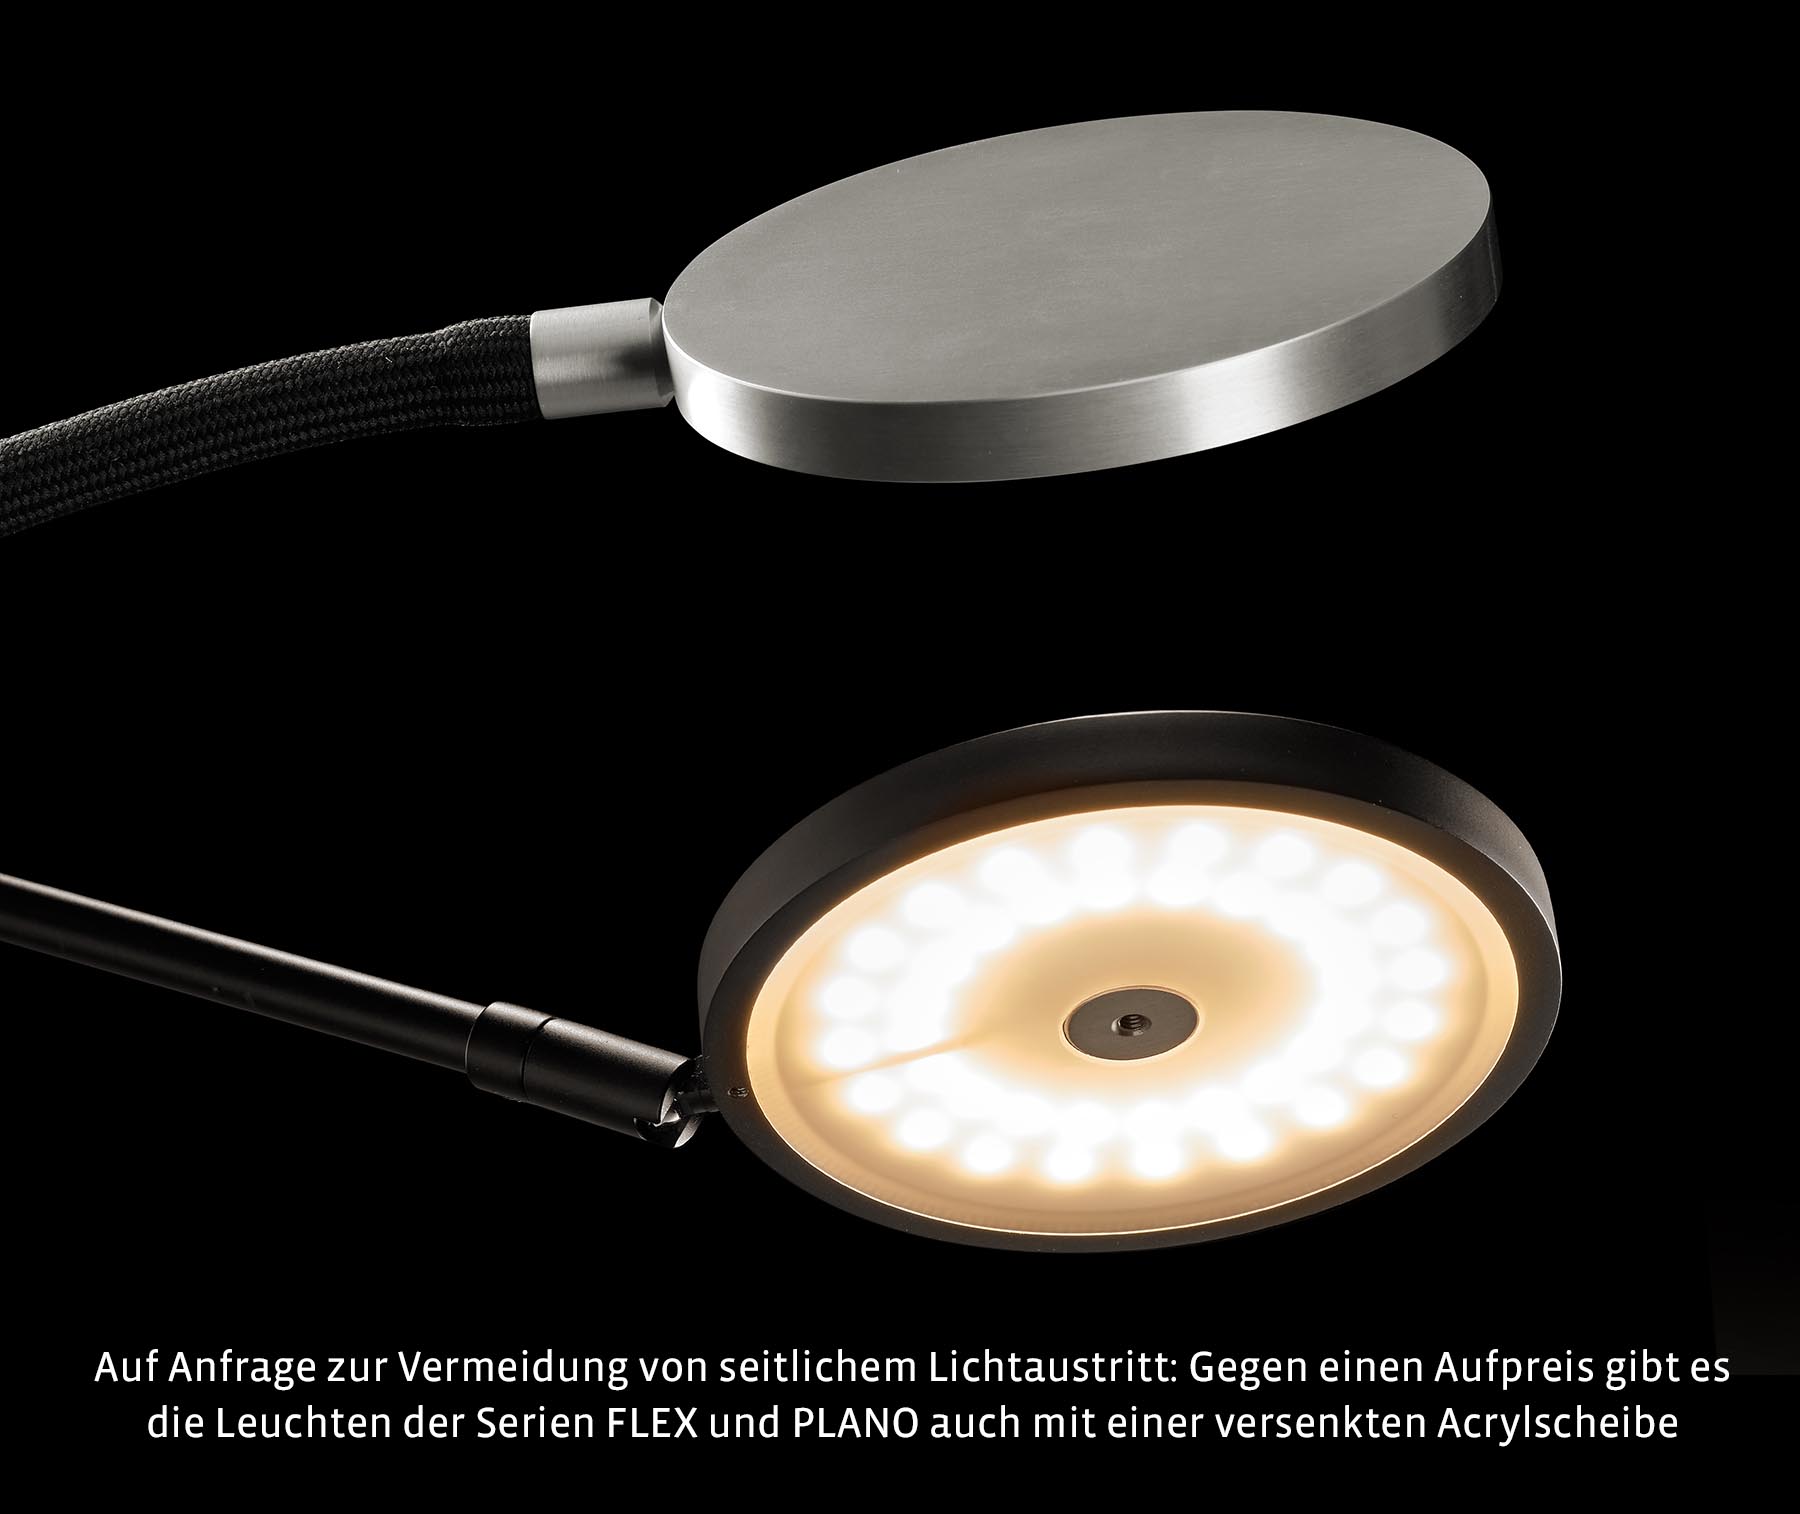 Moderne Lese-Stehleuchte FLEX mit High End-LED: Zur Vermeidung von seitlichem Lichtaustritt: Die alternative Diffusor-Acrylscheibe